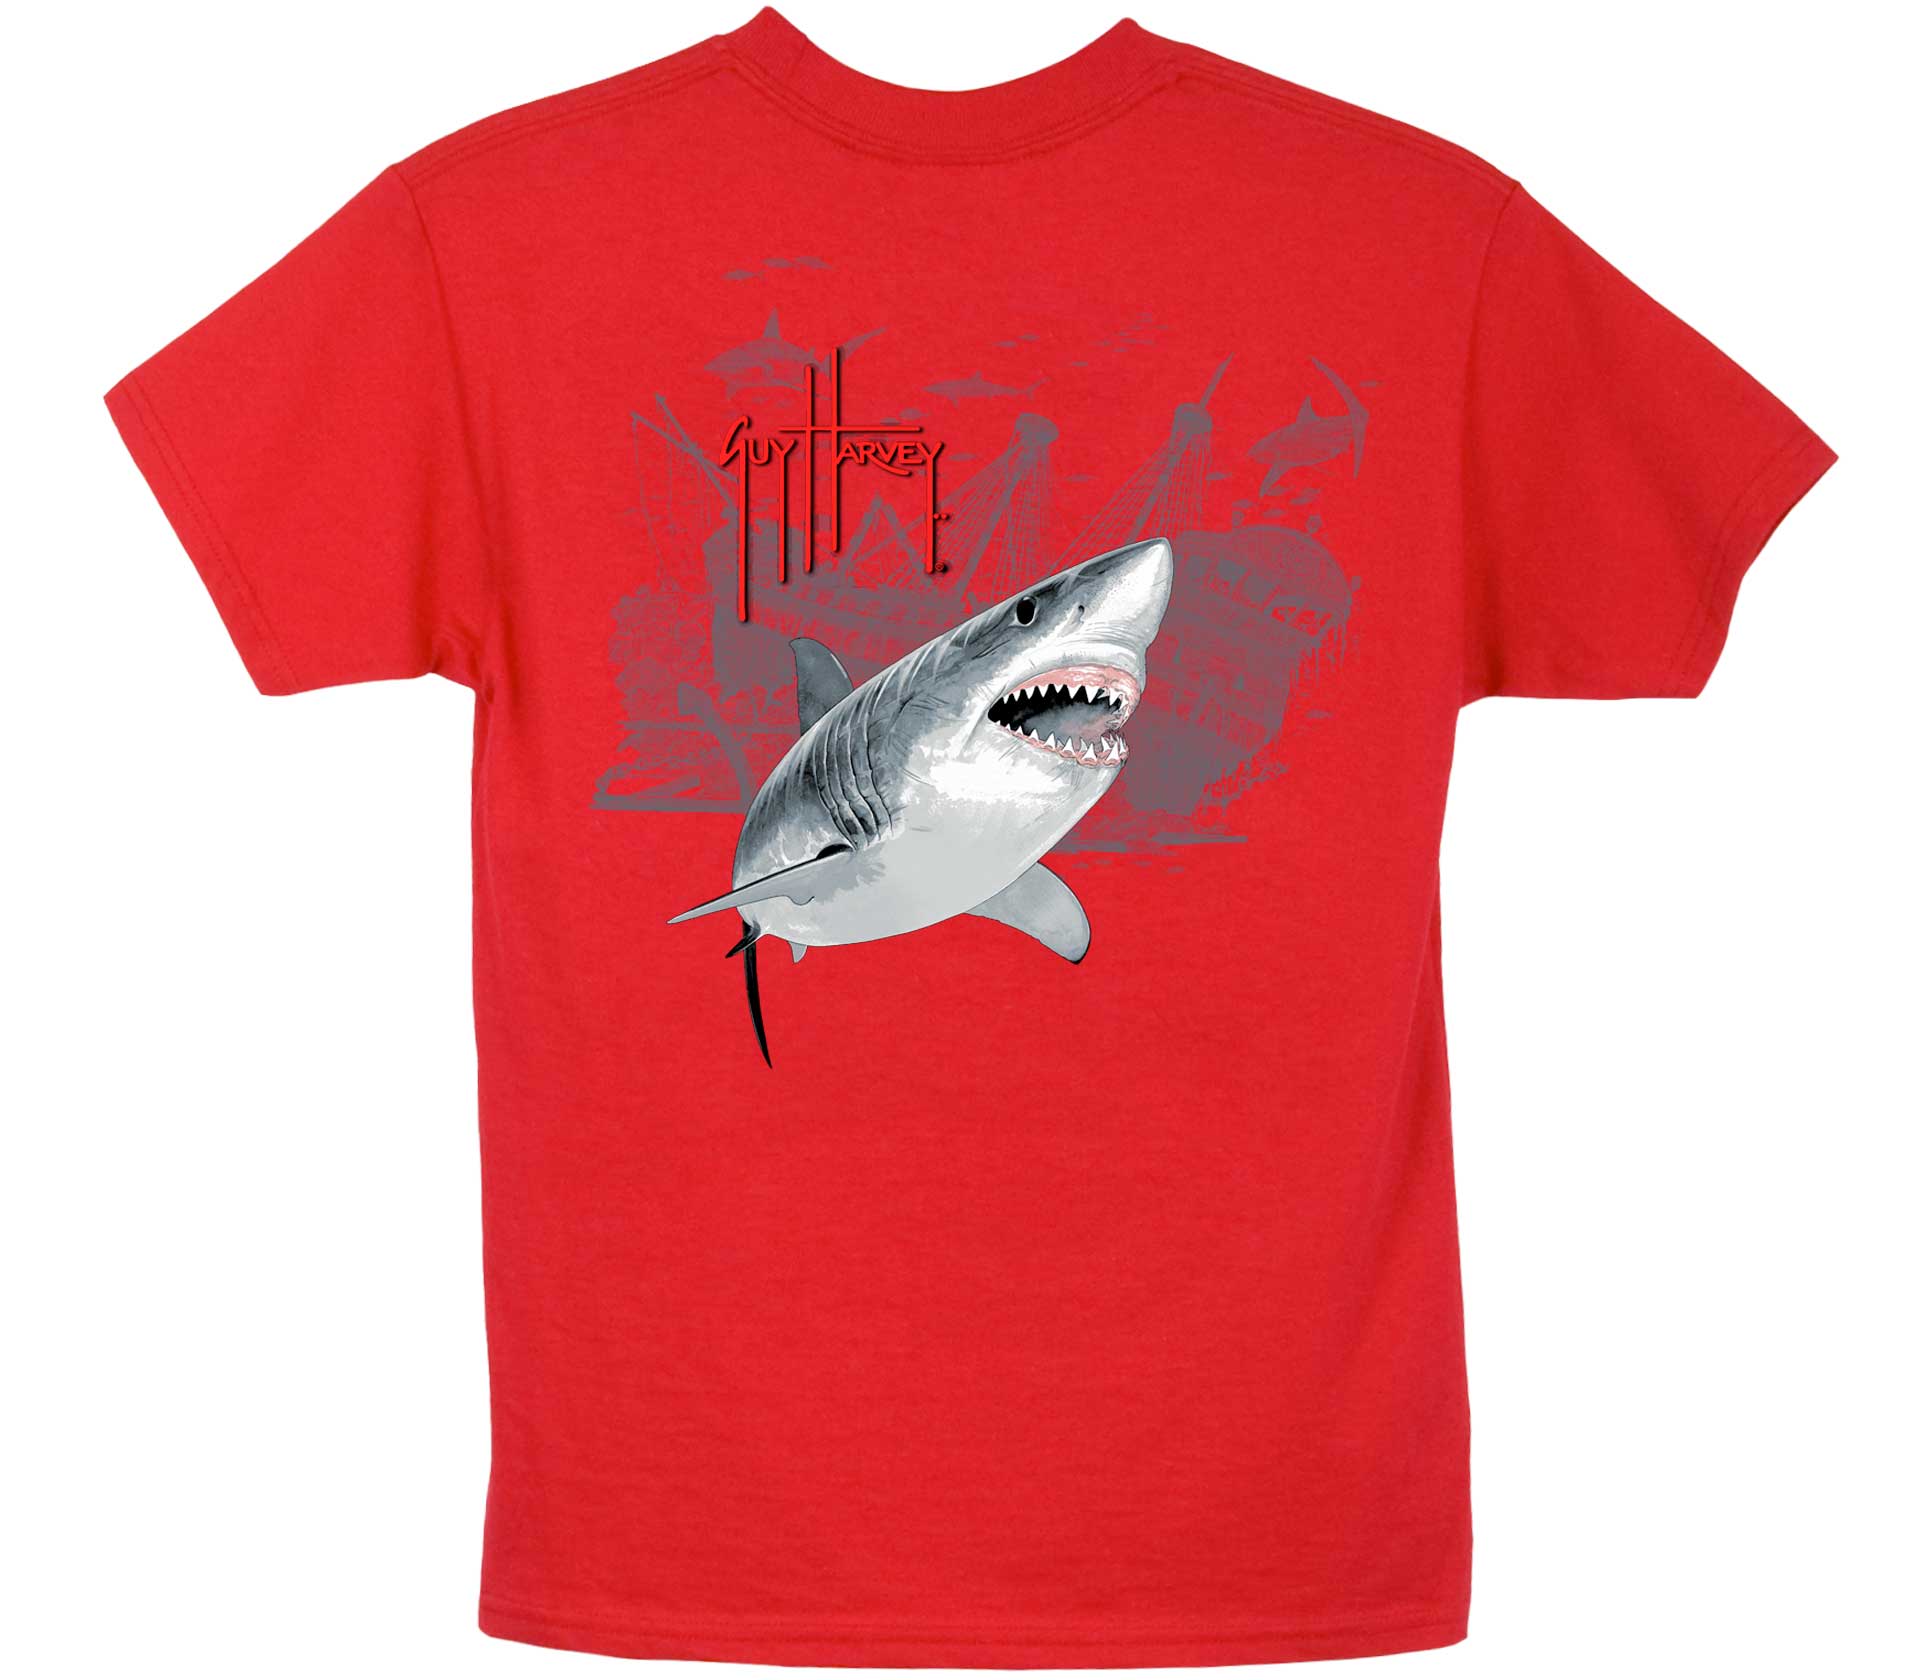 guy harvey kids shark t shirt